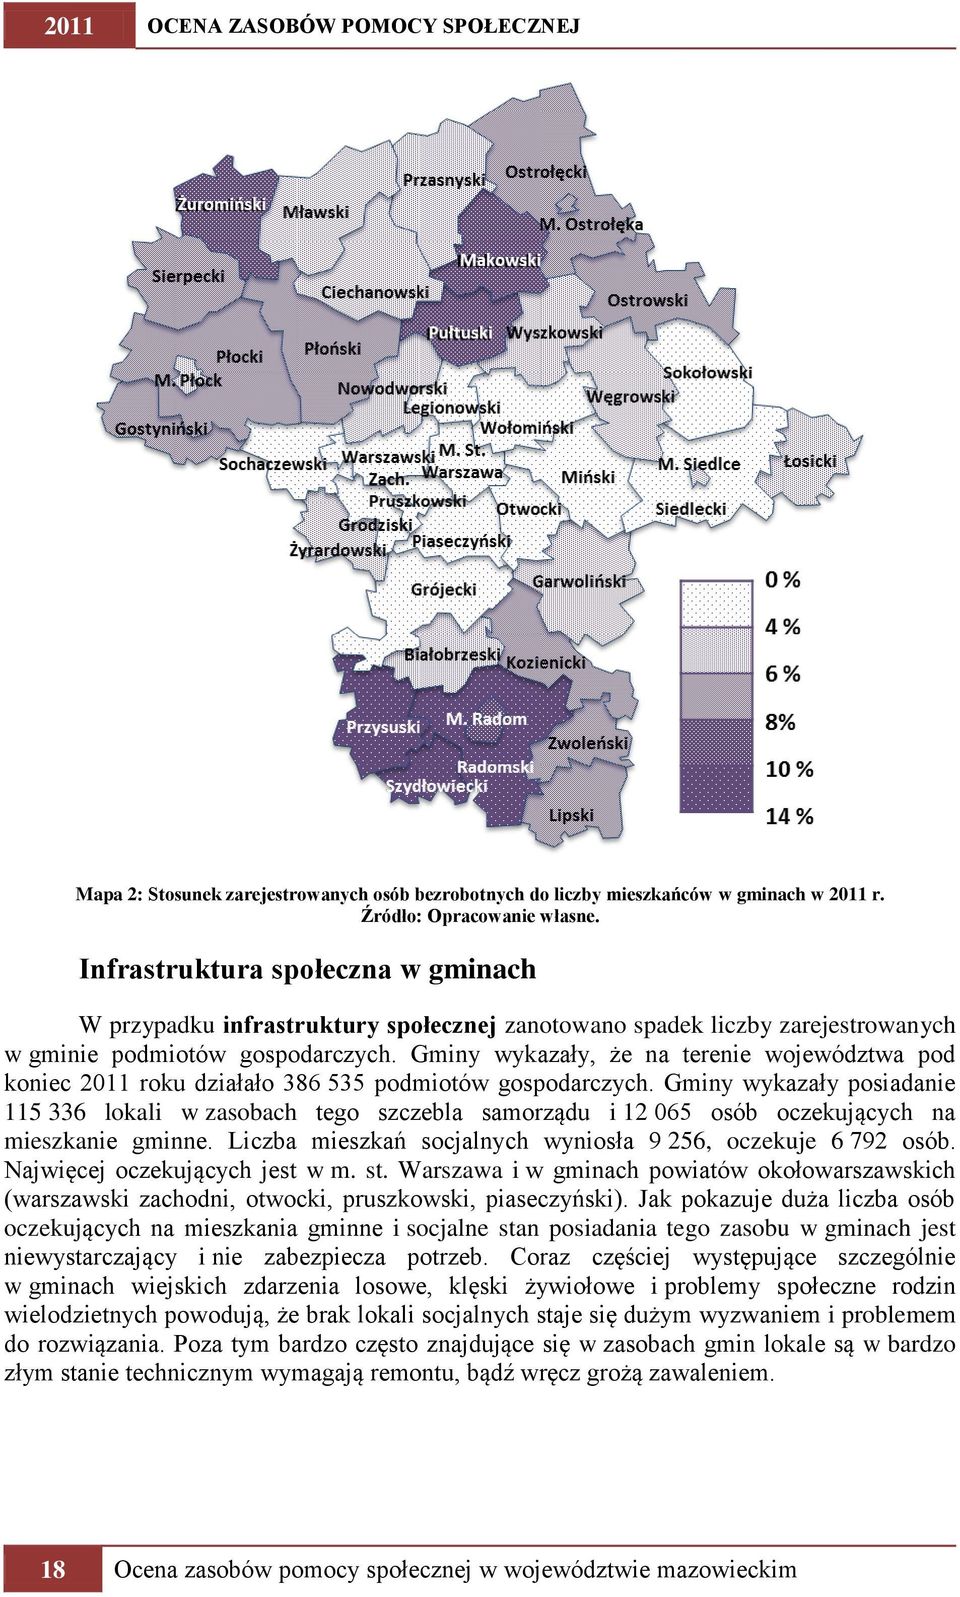 Gminy wykazały, że na terenie województwa pod koniec 2011 roku działało 386 535 podmiotów gospodarczych.